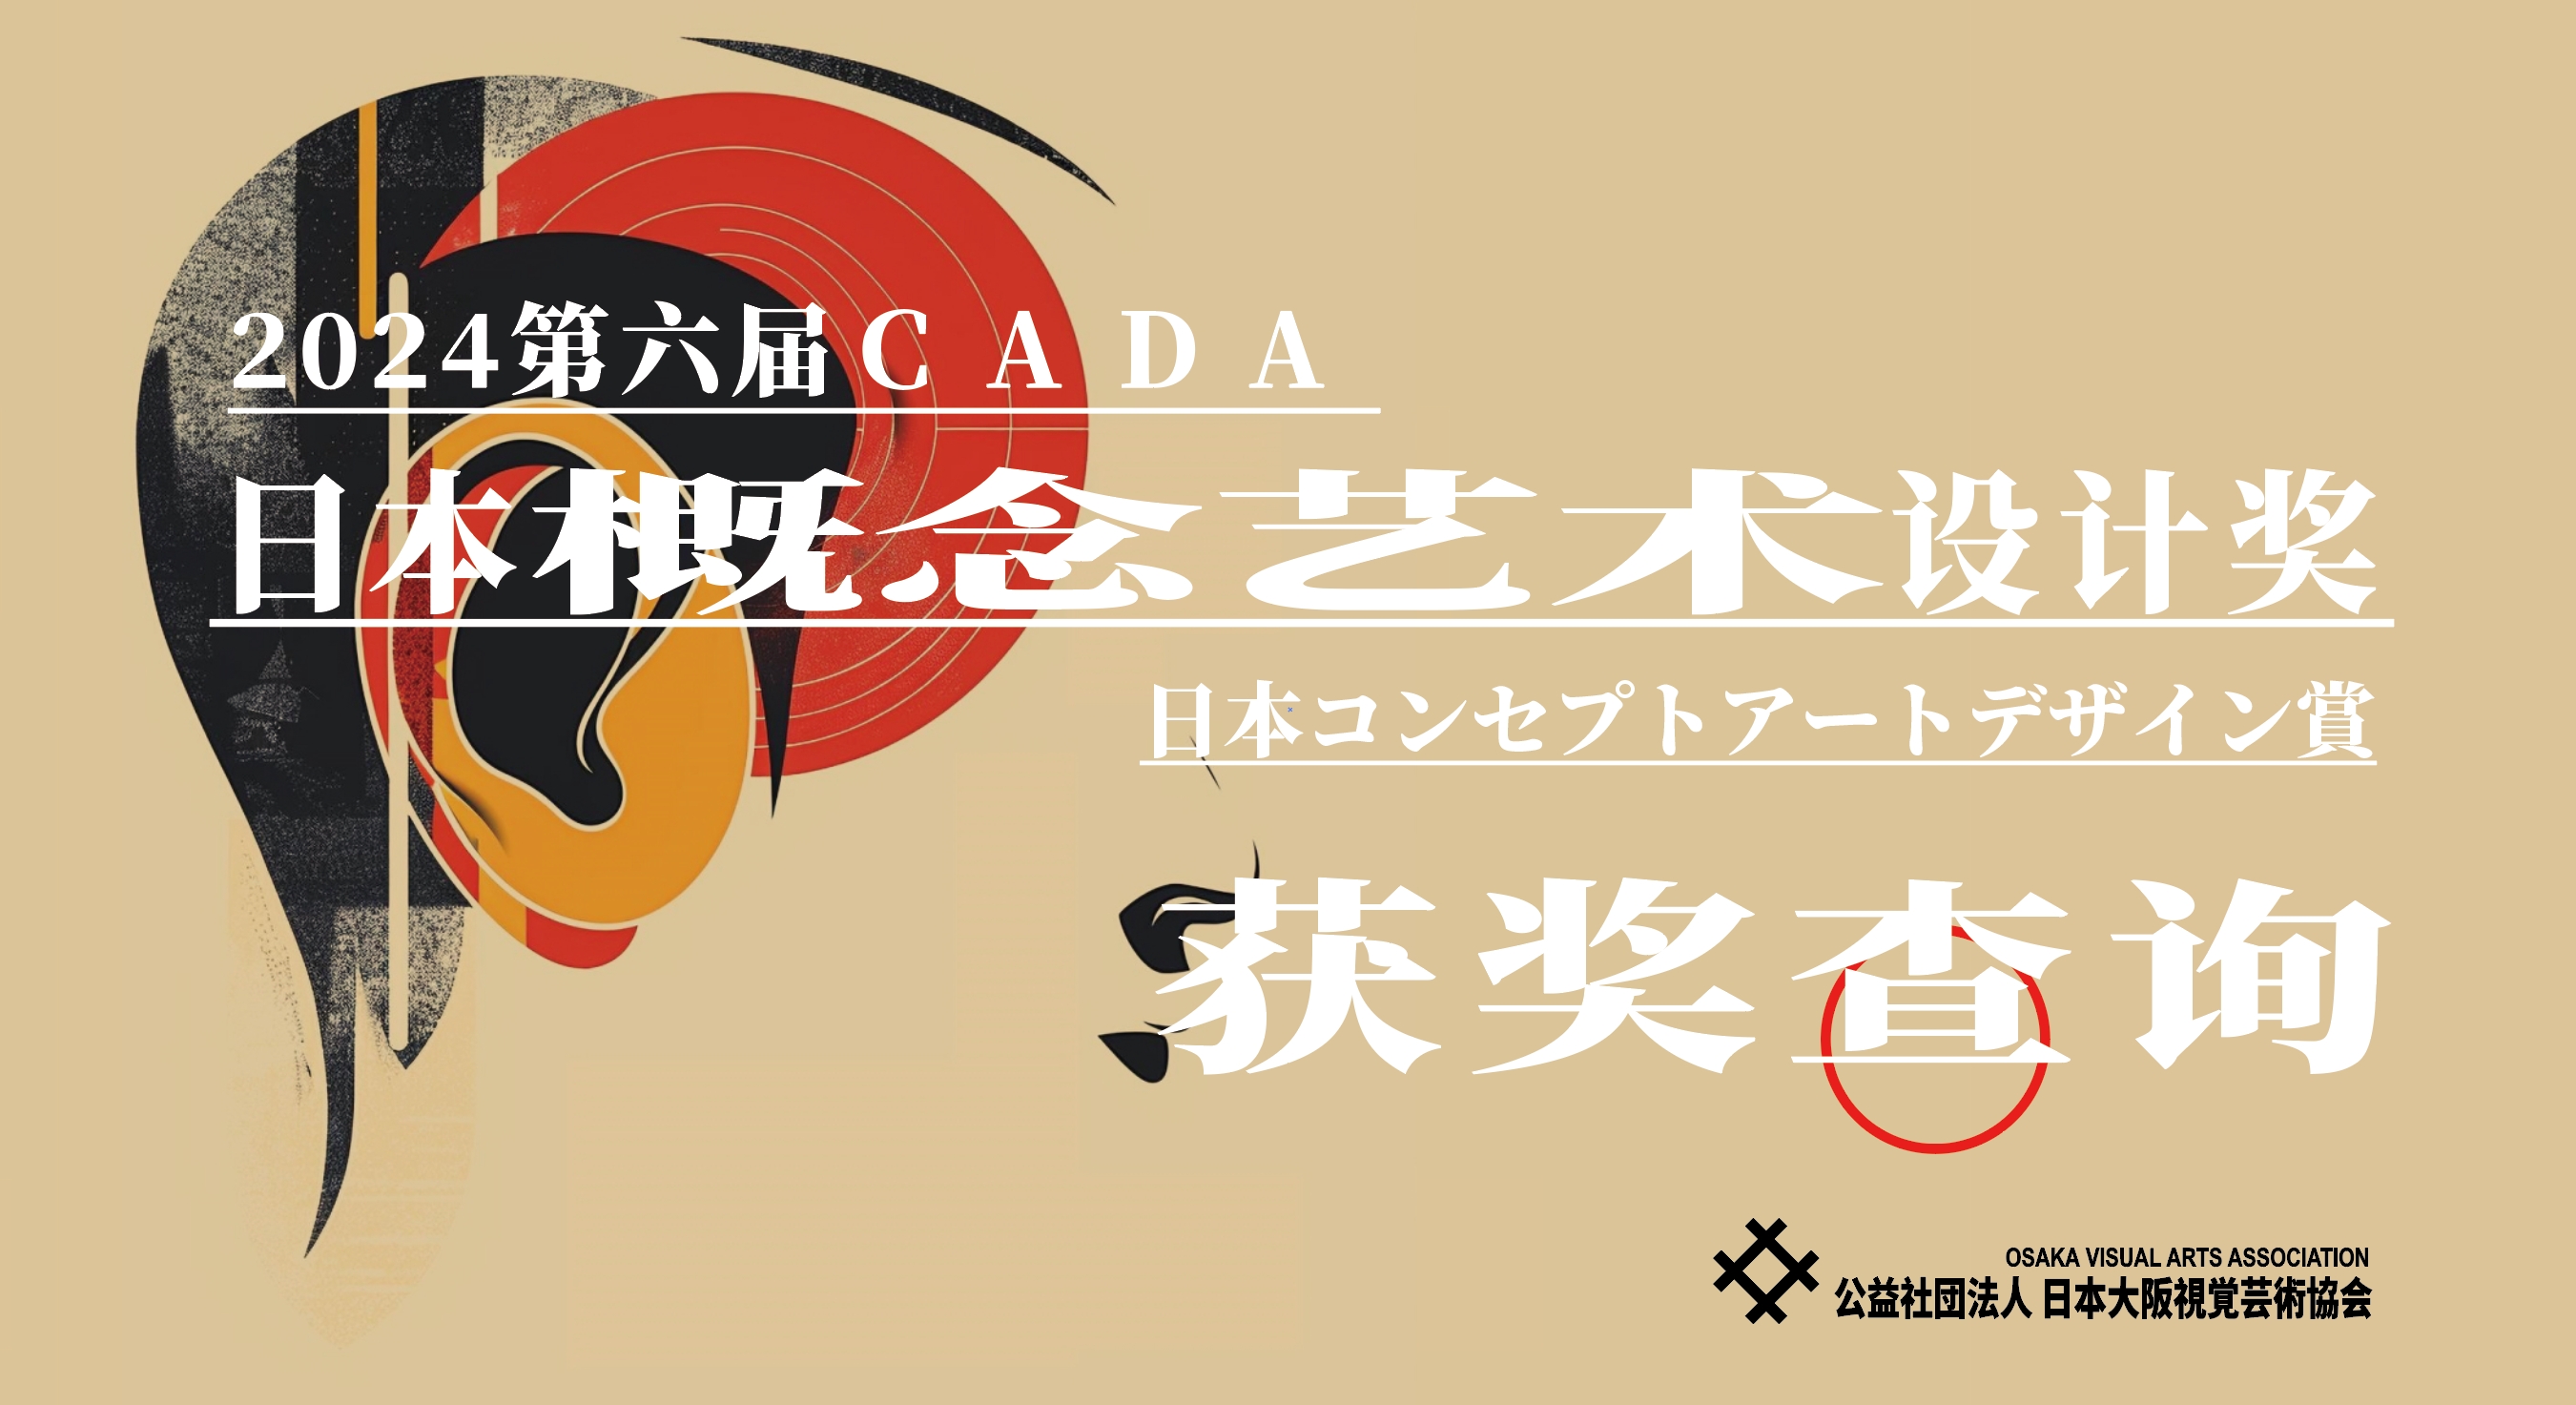 [获奖查询] 2024CADA第六届日本概念艺术设计奖-CNYISAI艺赛